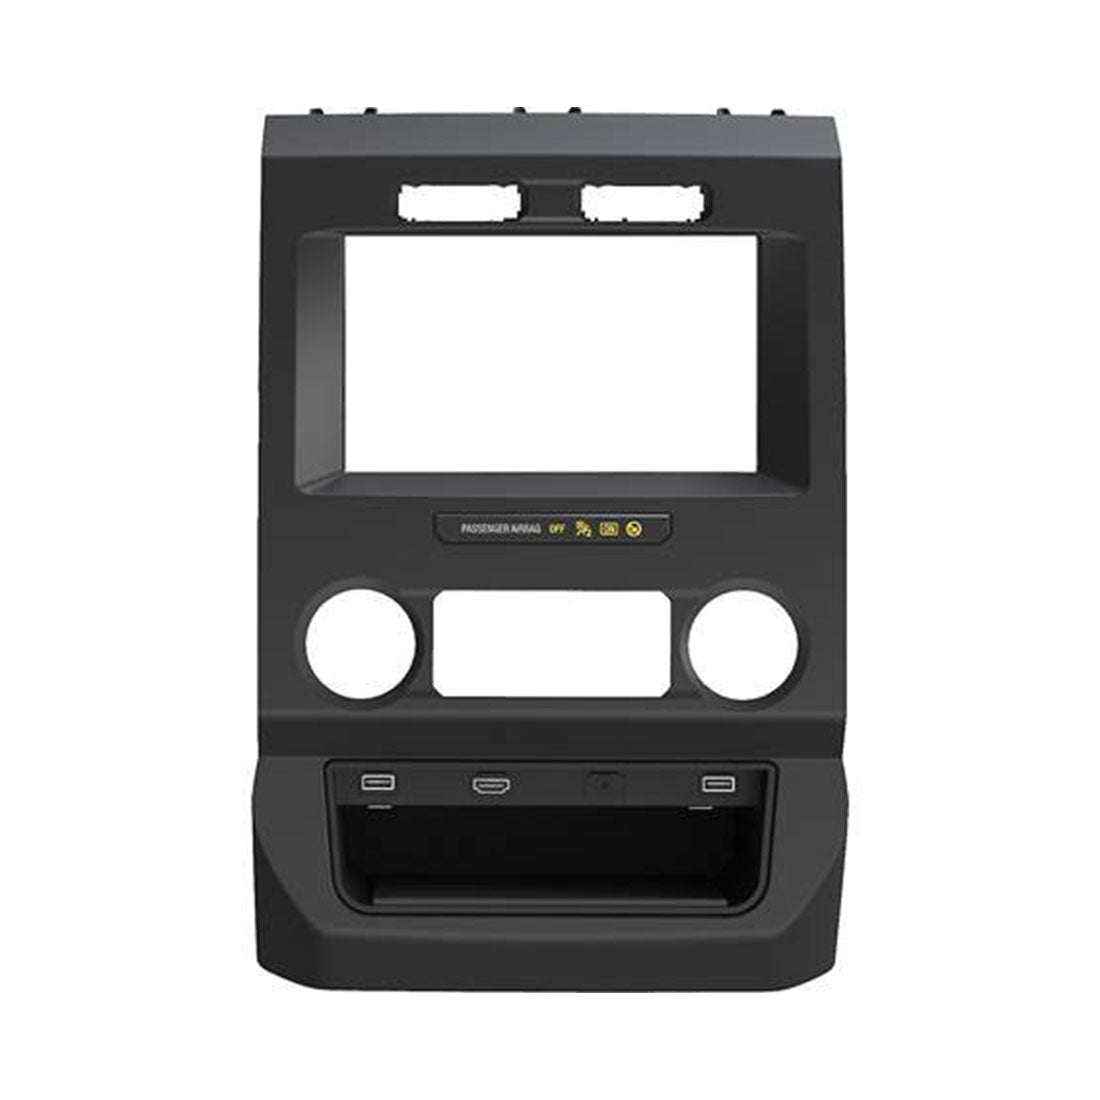 iDatalink Maestro KIT-FTR1 Factory System Adapter Dash Kit for